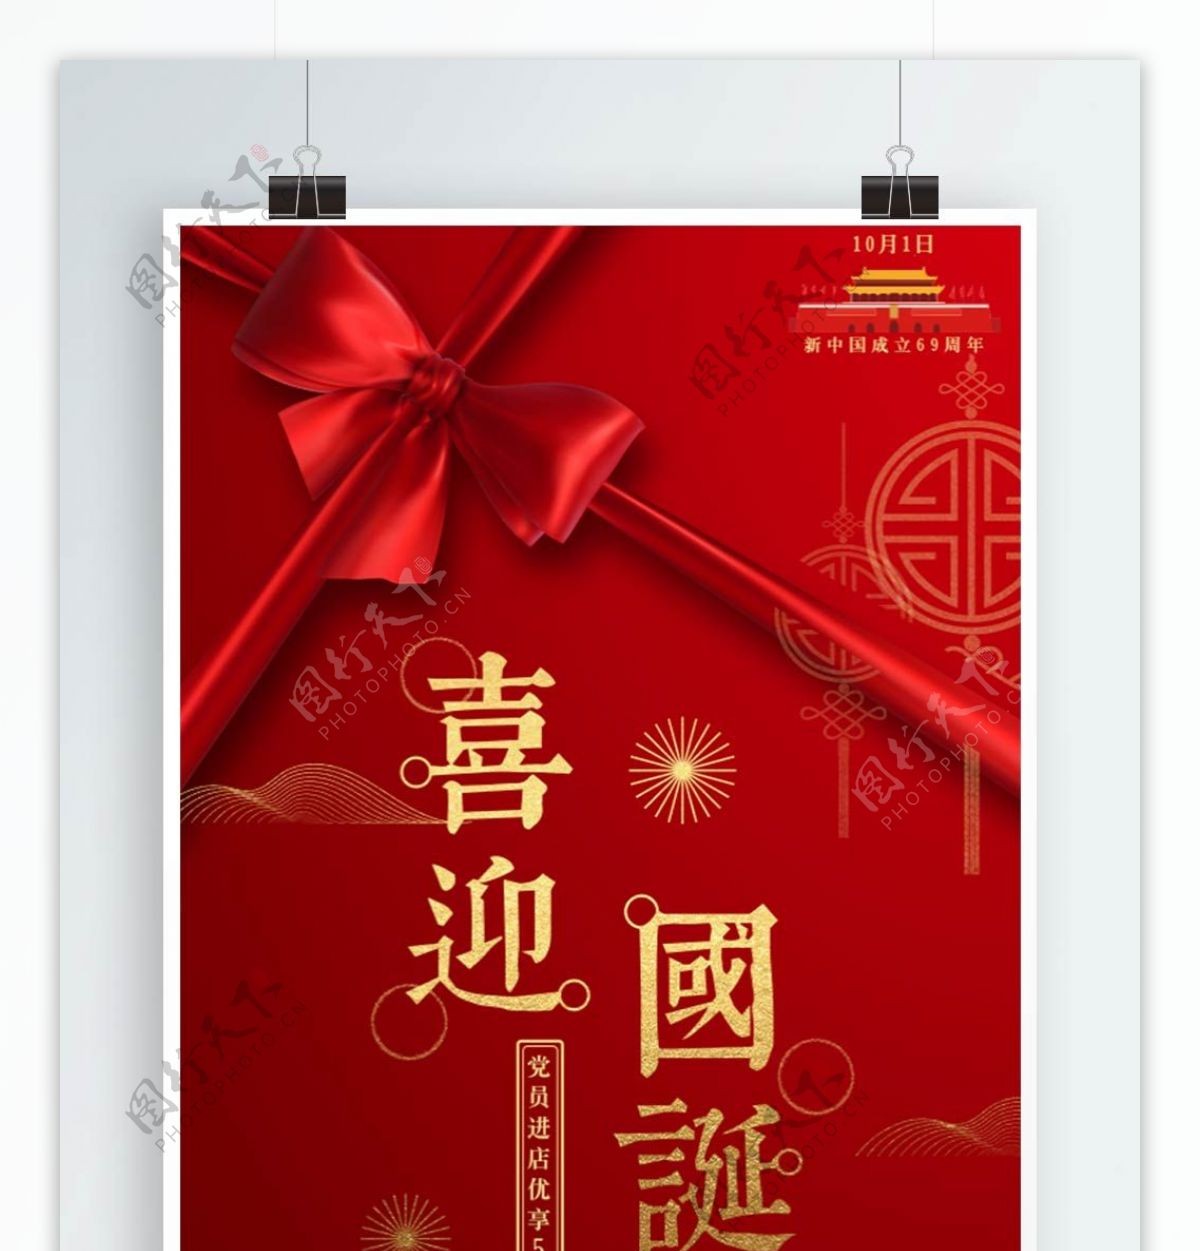 红色简约高档大气喜迎国诞国庆节促销海报